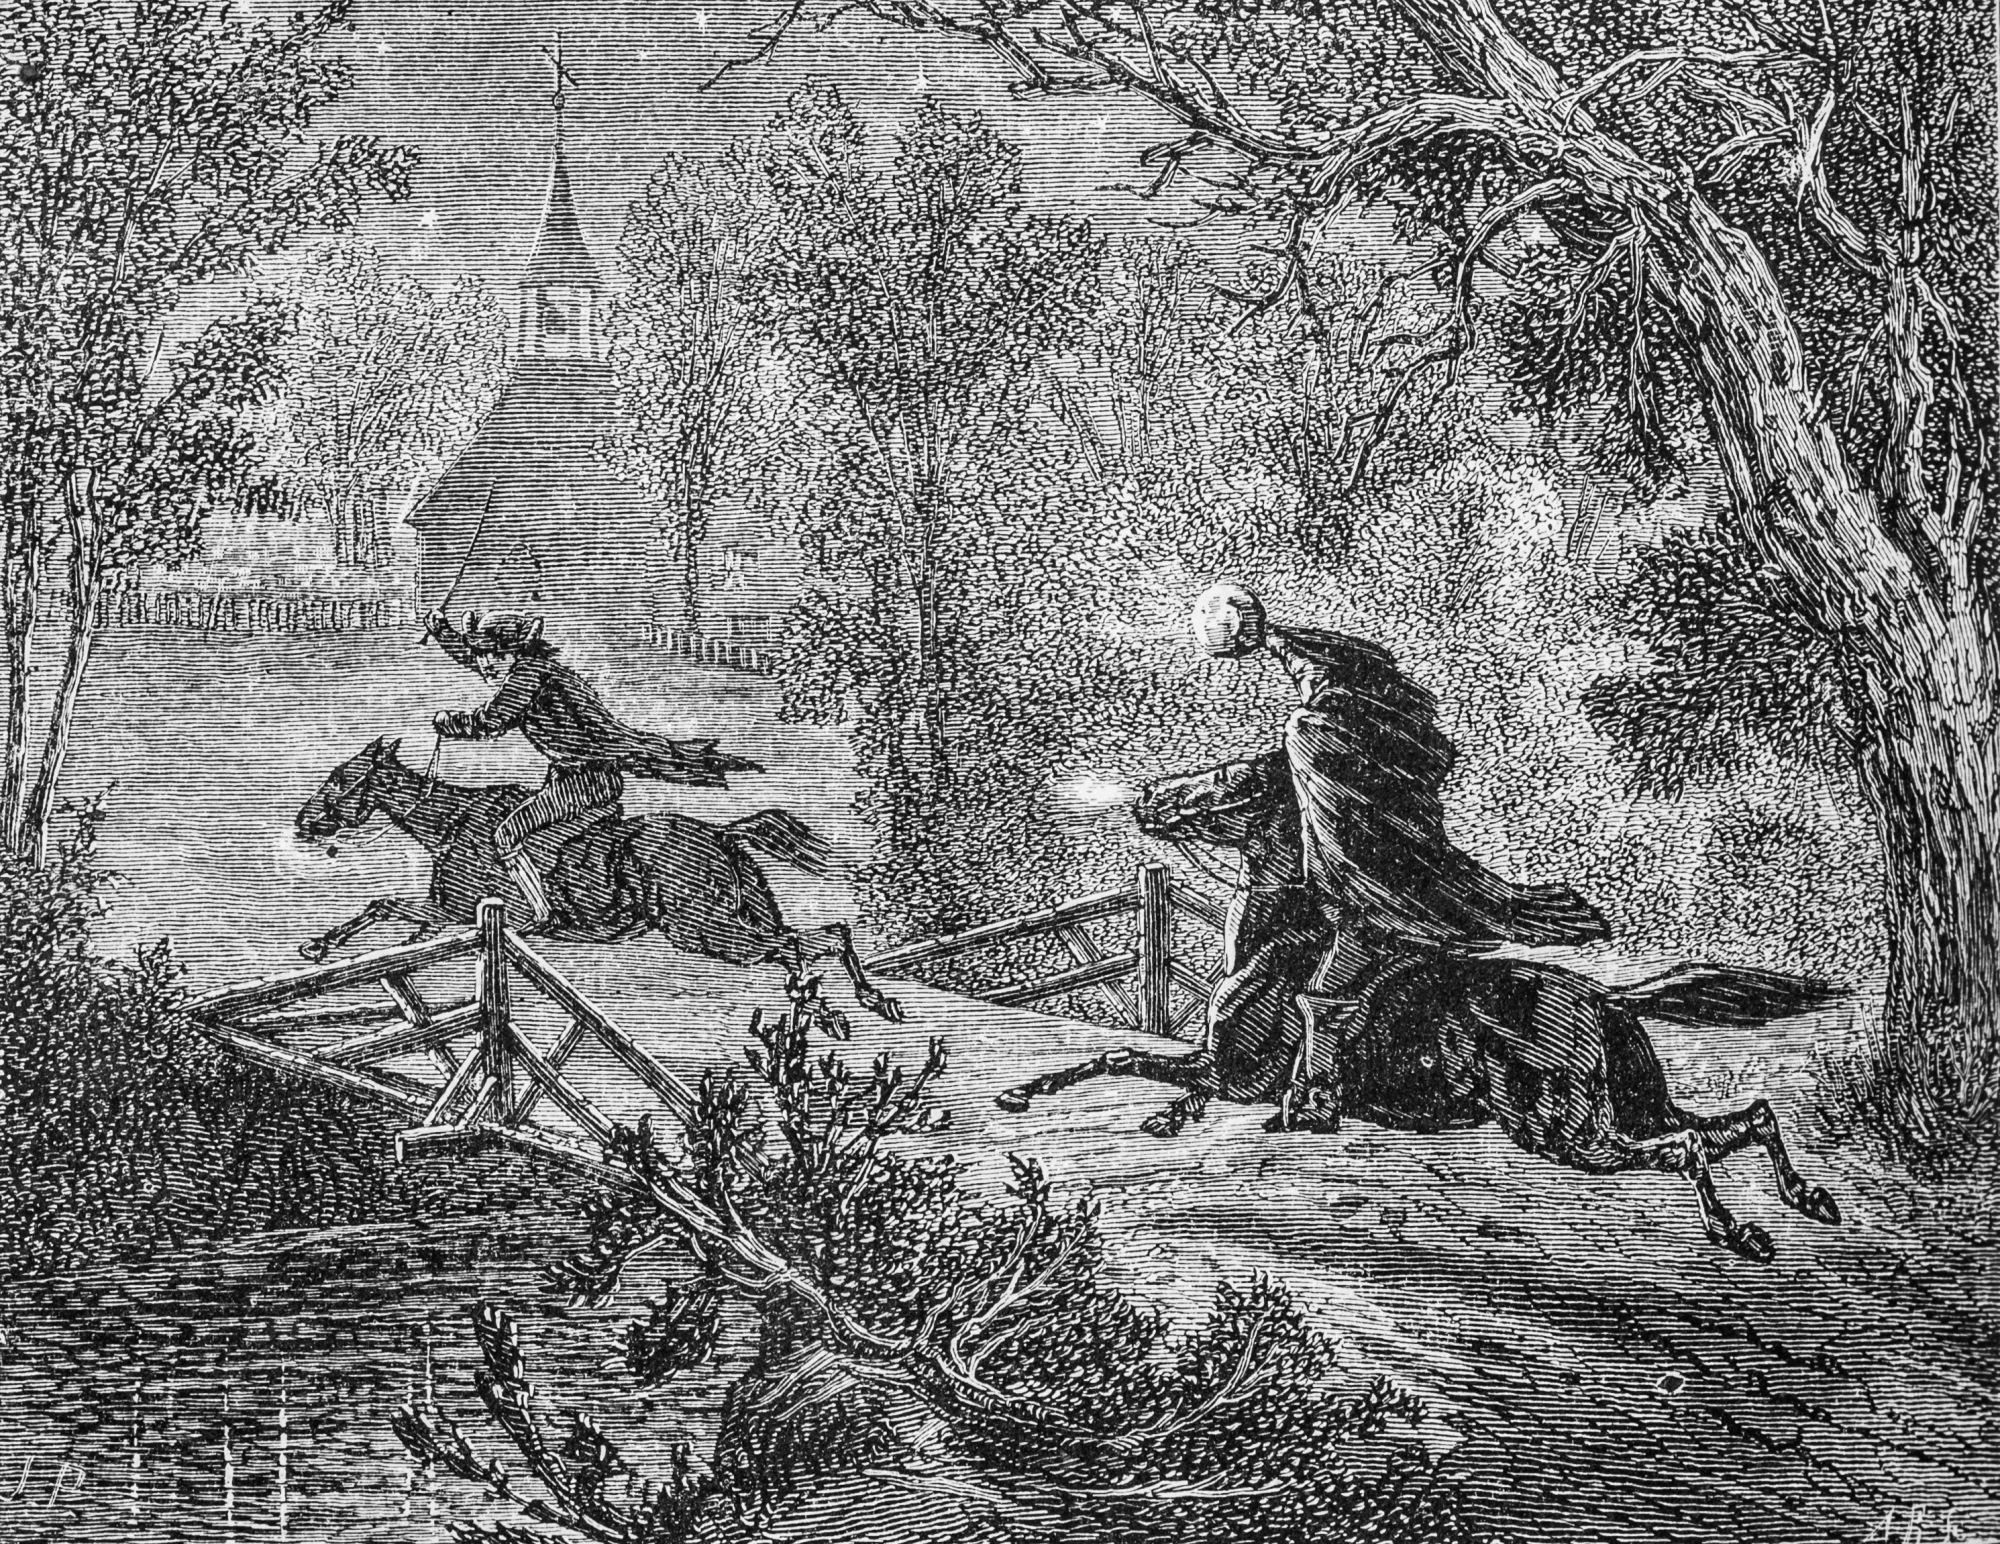 Le Cavalier sans tête poursuit Ichabod Crane à travers un pont étroit, comme illustré dans un numéro d'avril 1876 du Harper's New Monthly Magazine.  Le Cavalier sans tête est un personnage fictif de la nouvelle "La légende de Sleepy Hollow" publié en 1819 par Washington Irving.